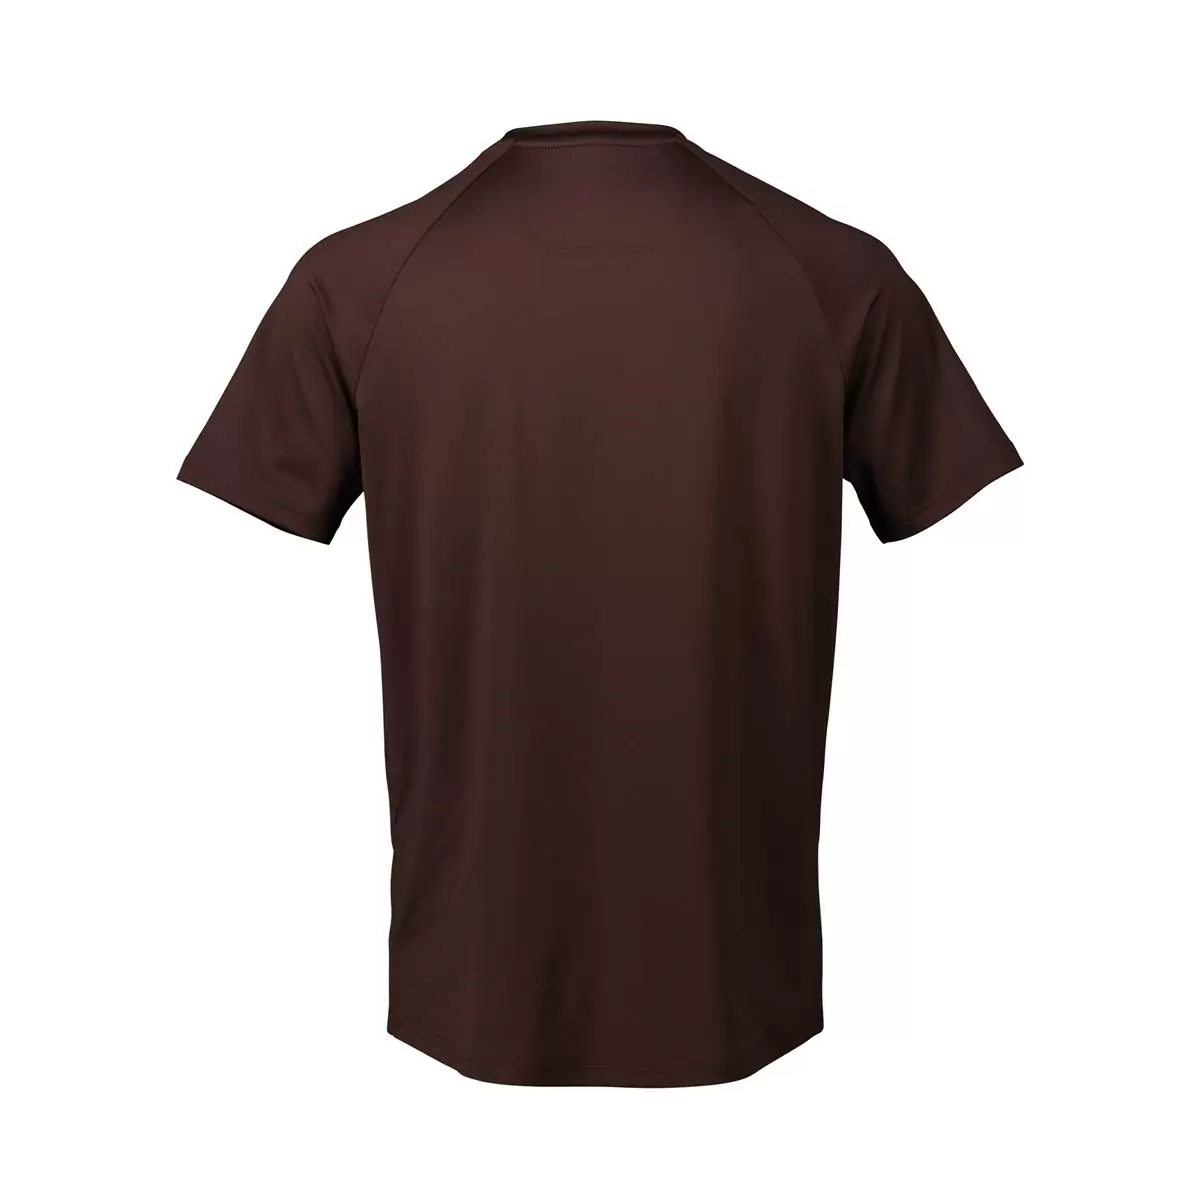 T-shirt Reform Enduro Axinite Marron taille XL #1